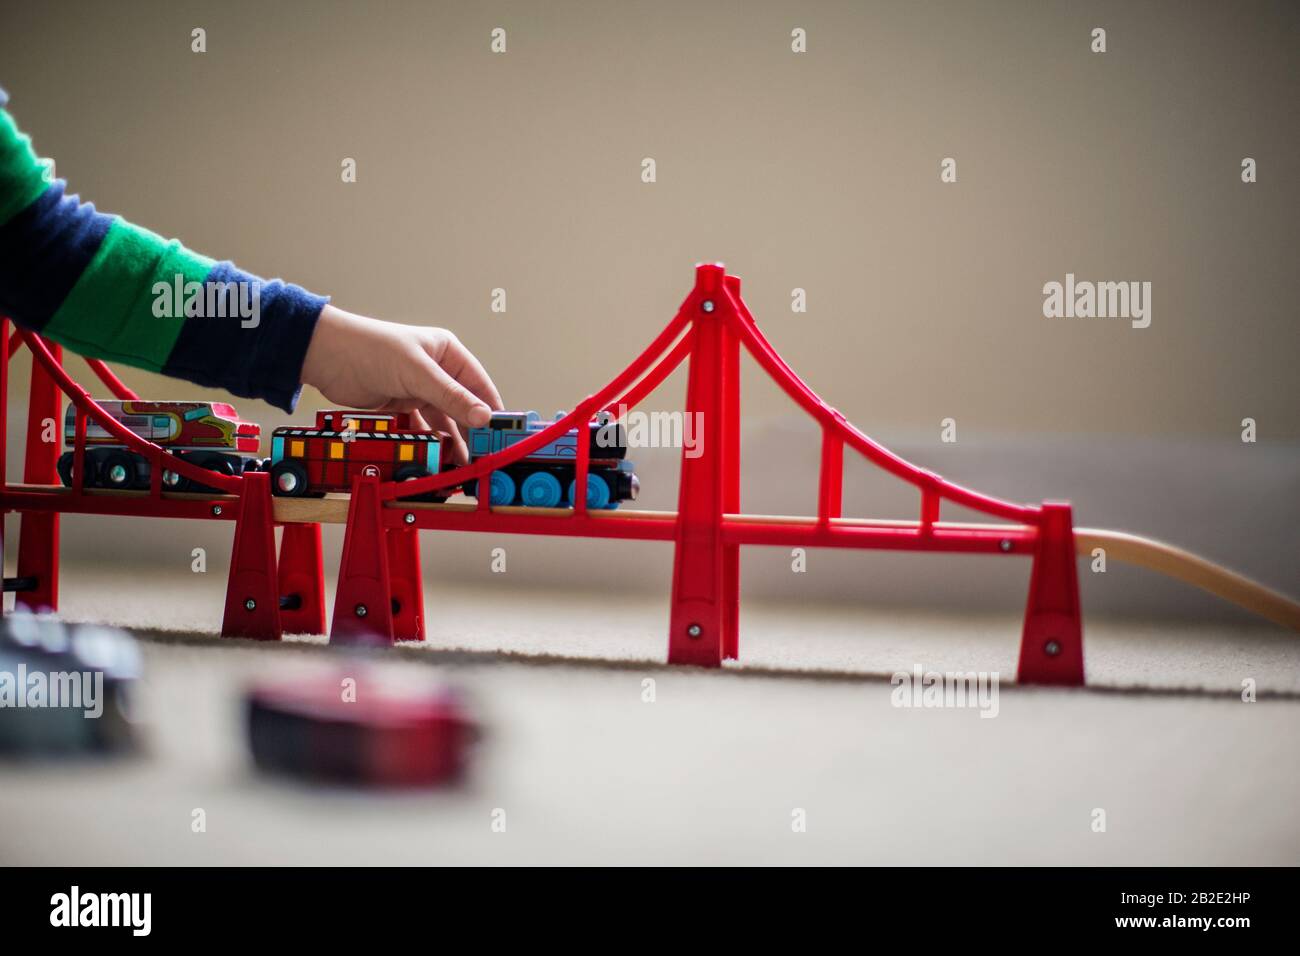 Kinder, die mit einem Spielzeugzug und einem Brückensatz spielen Stockfoto